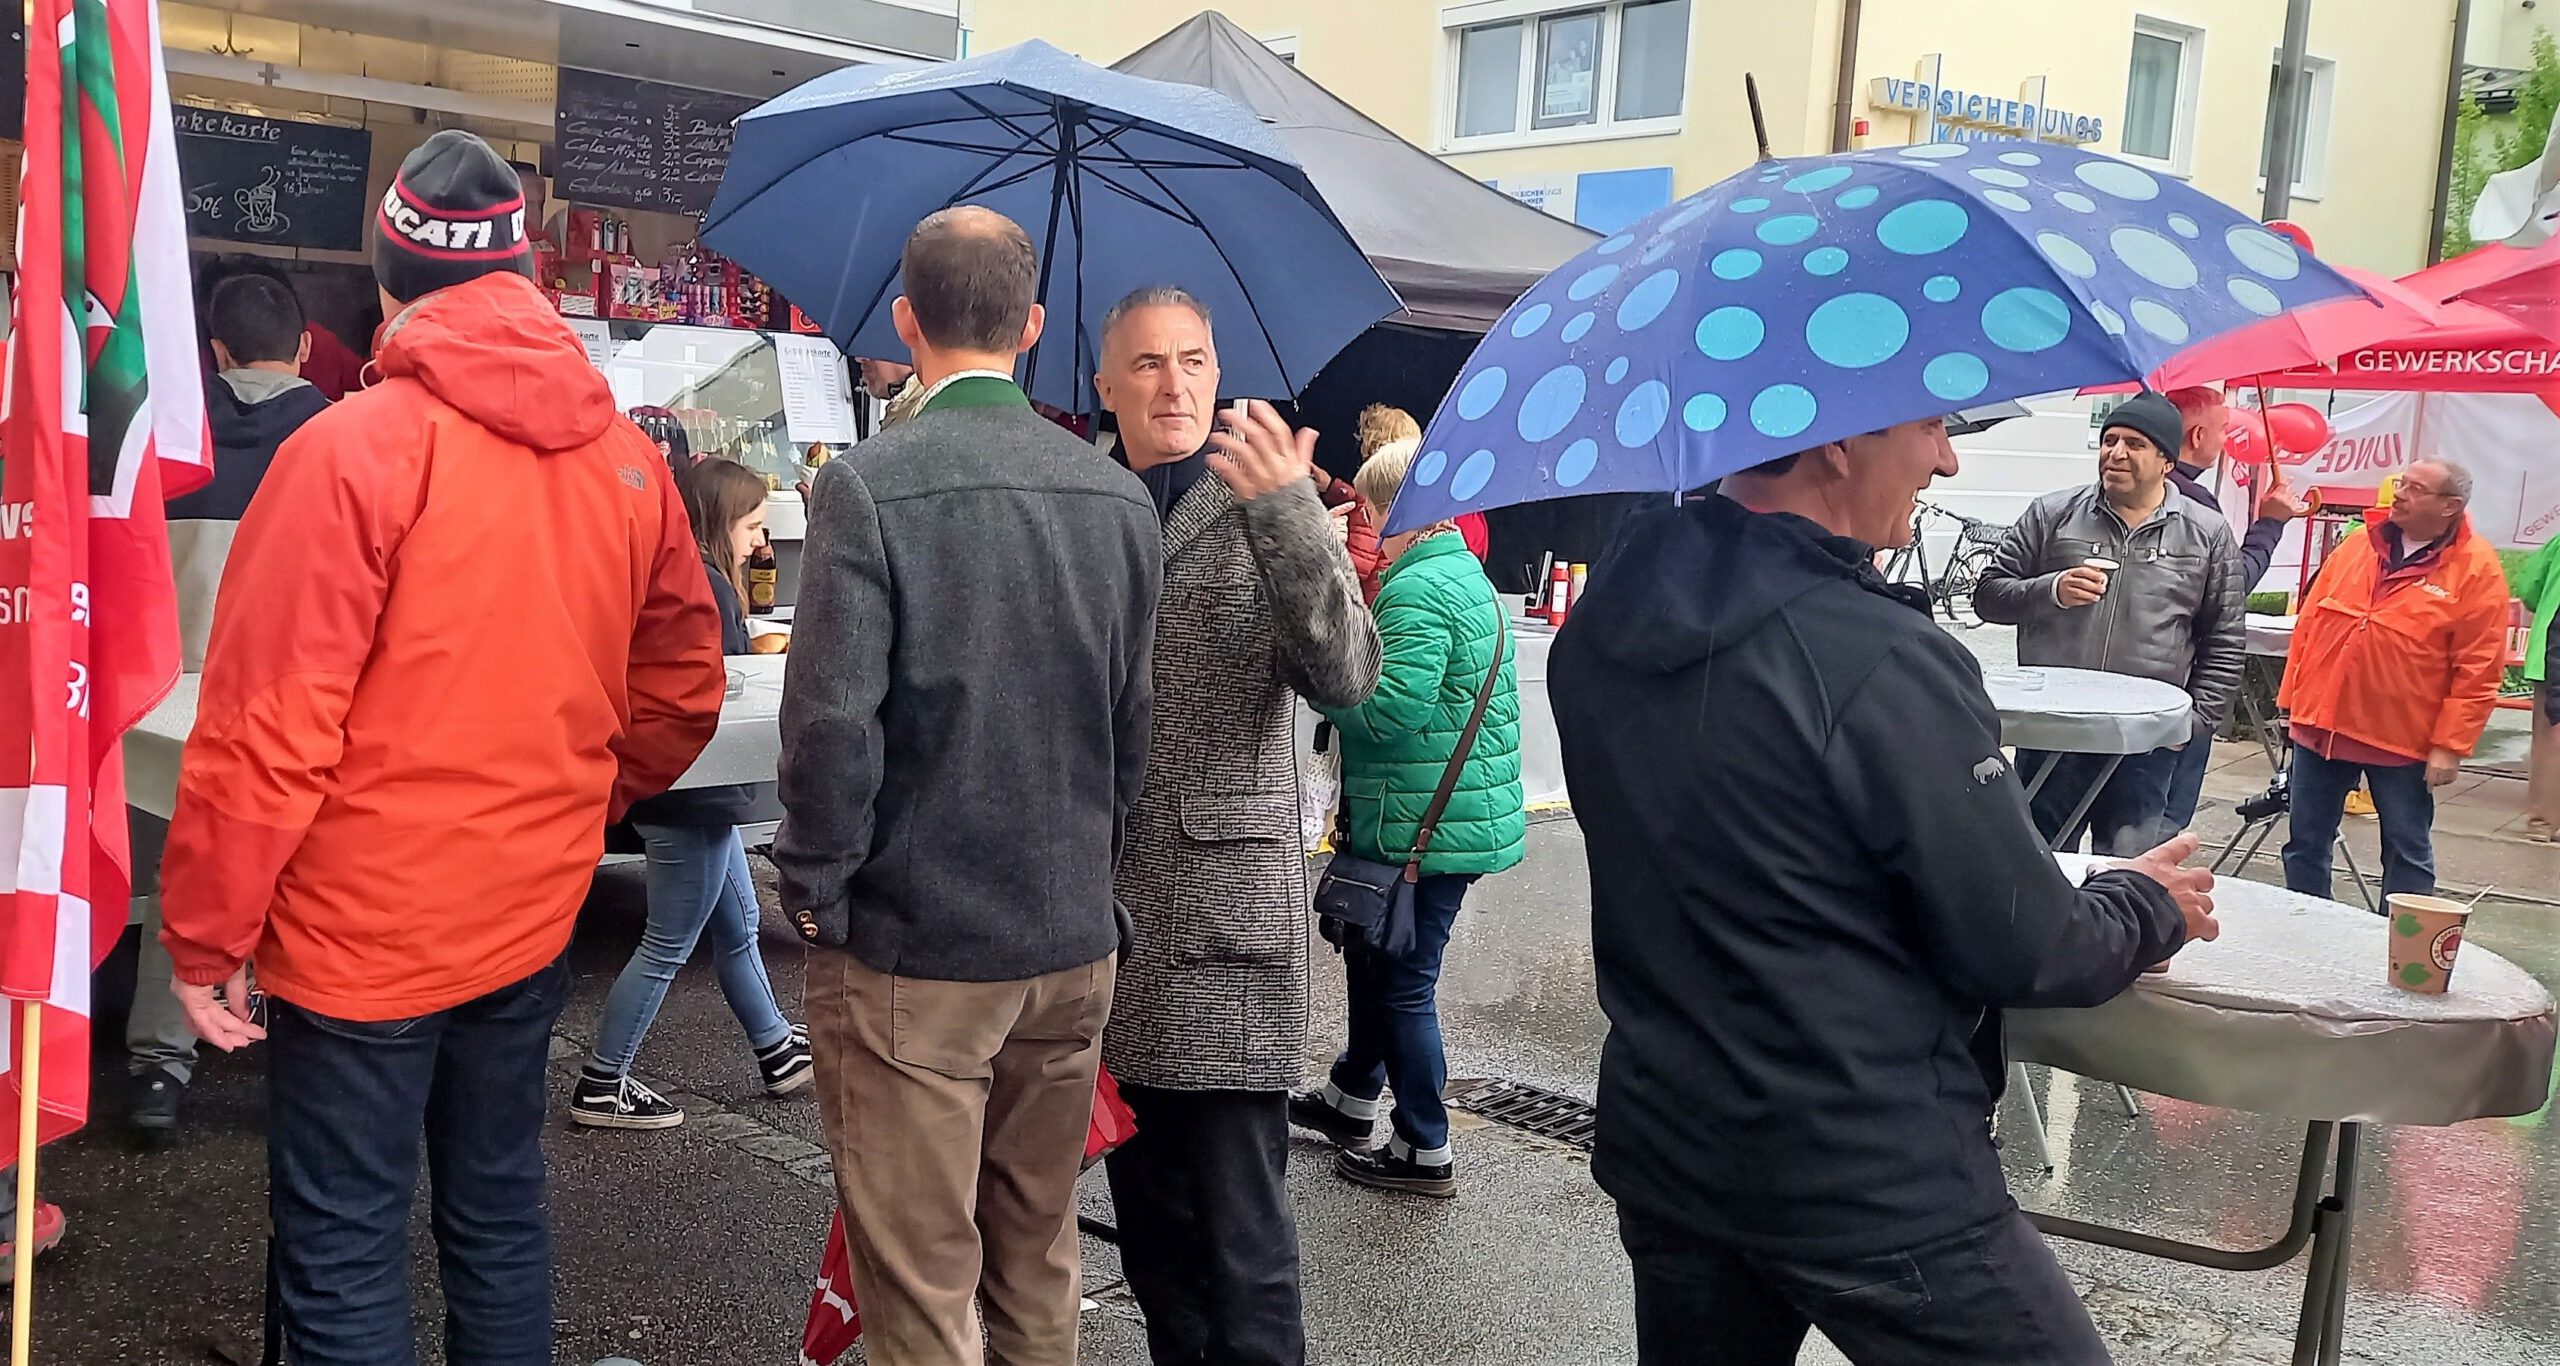 Zwei Männer sprechen mieinander. Der rechte Mann hält einen Regenschirm. Davor noch ein Mann mit Regenschirm mit großen blauen Punkten